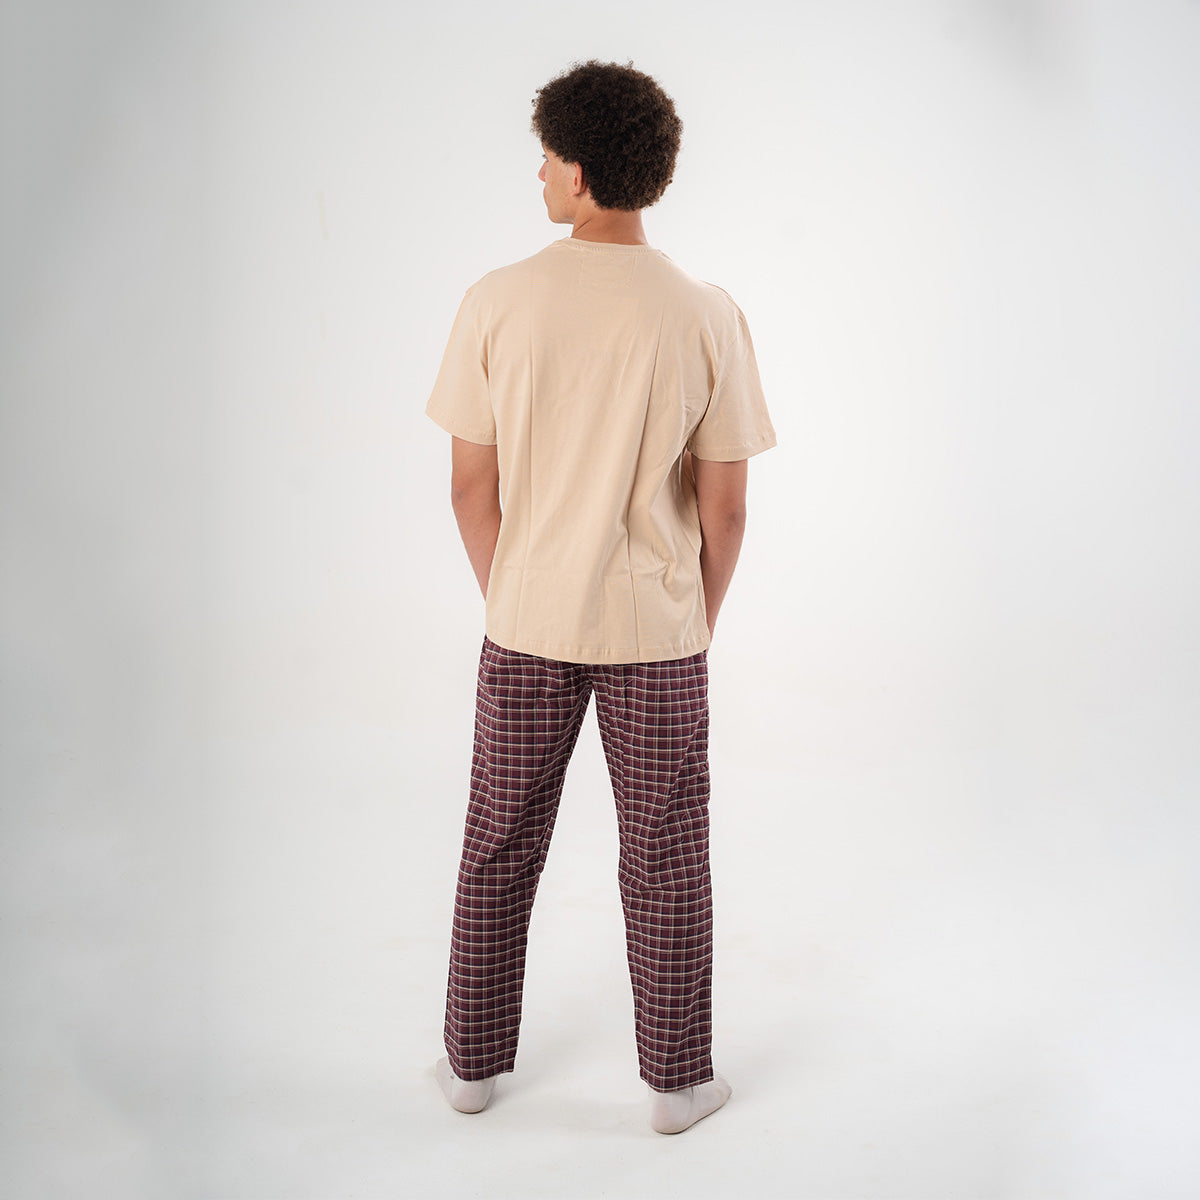 Burgundy Plaid Pyjama Pants set